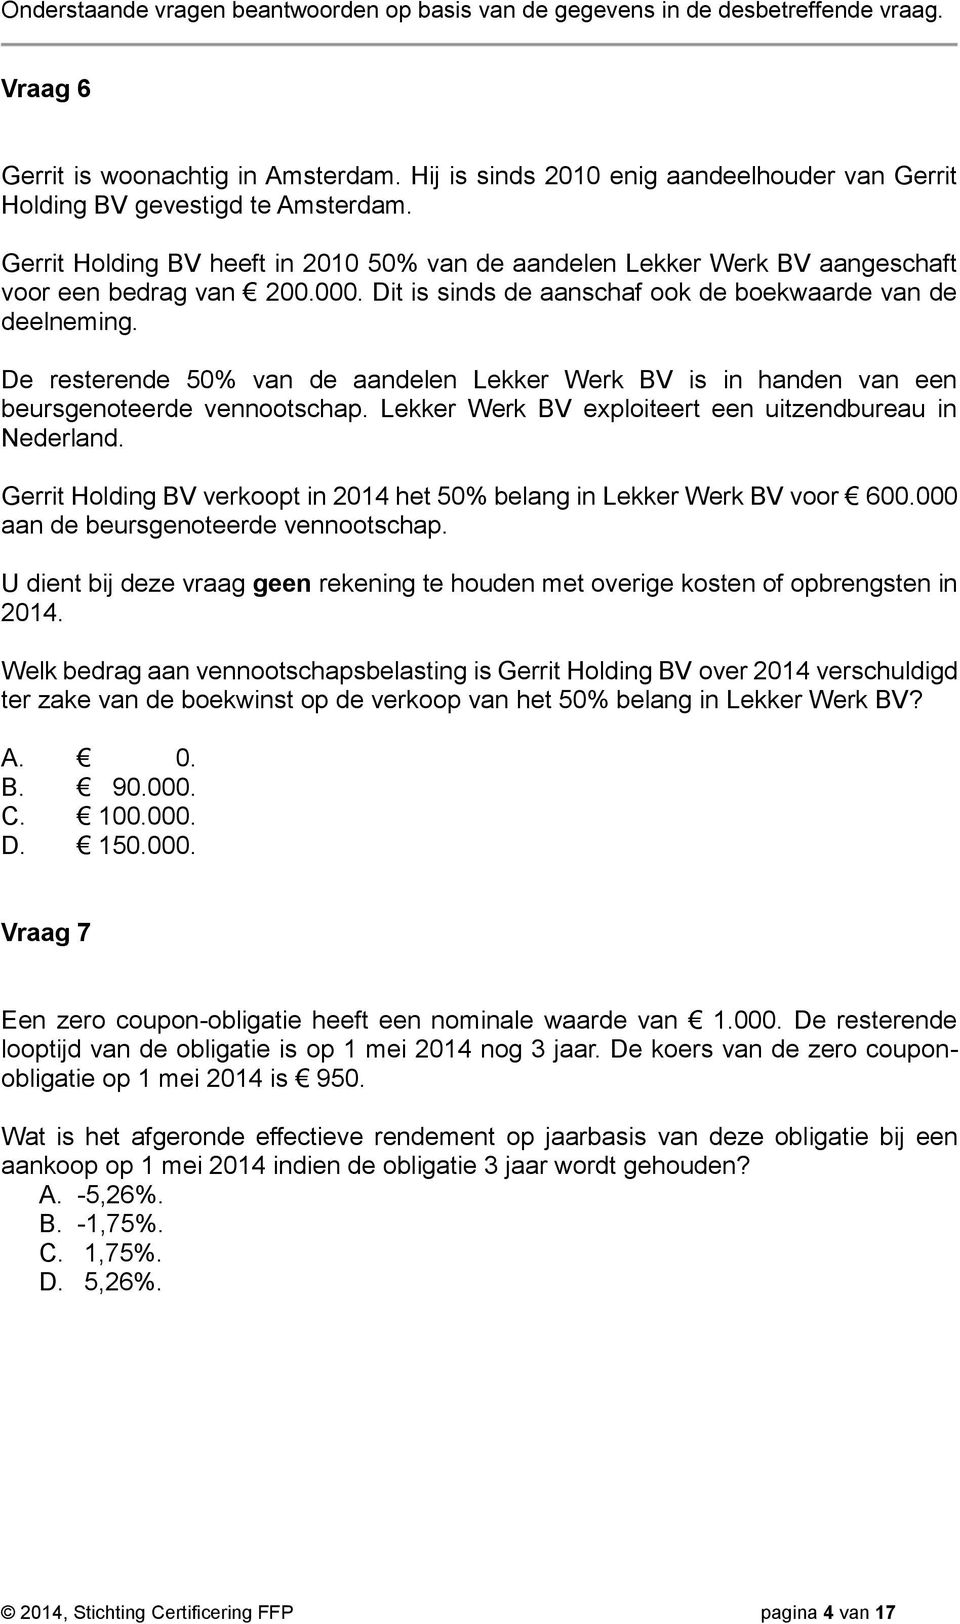 De resterende 50% van de aandelen Lekker Werk BV is in handen van een beursgenoteerde vennootschap. Lekker Werk BV exploiteert een uitzendbureau in Nederland.